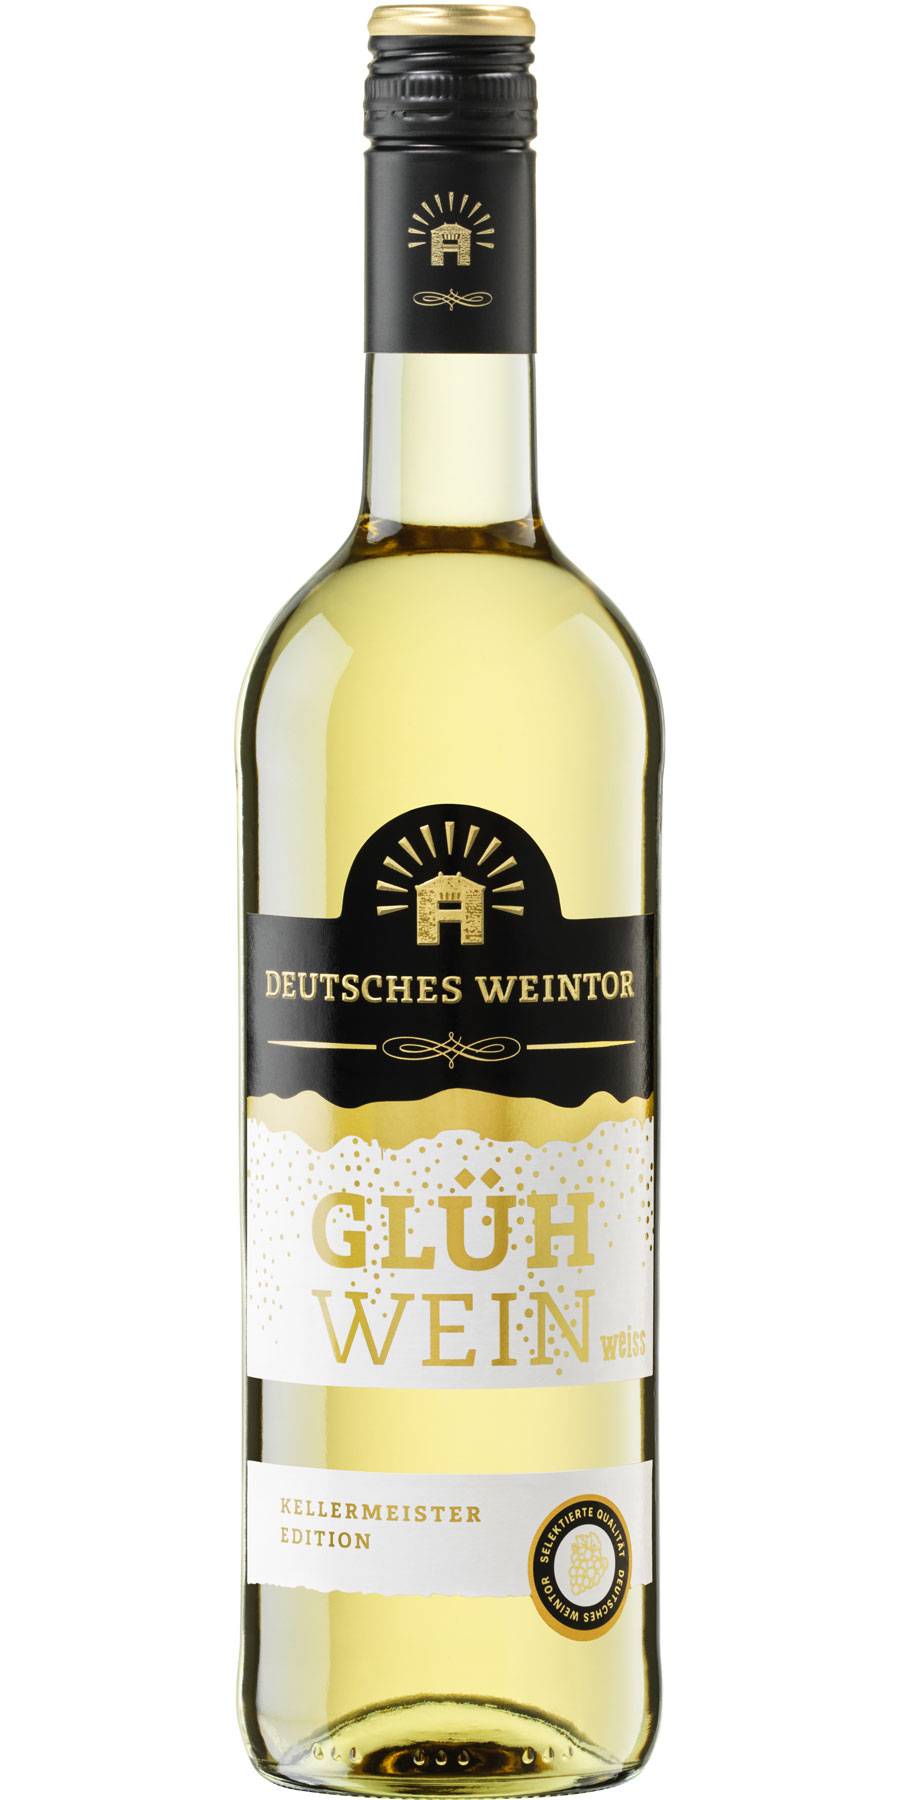 Deutsches Weintor, Glühwein WEISS Kellermeister - Edition